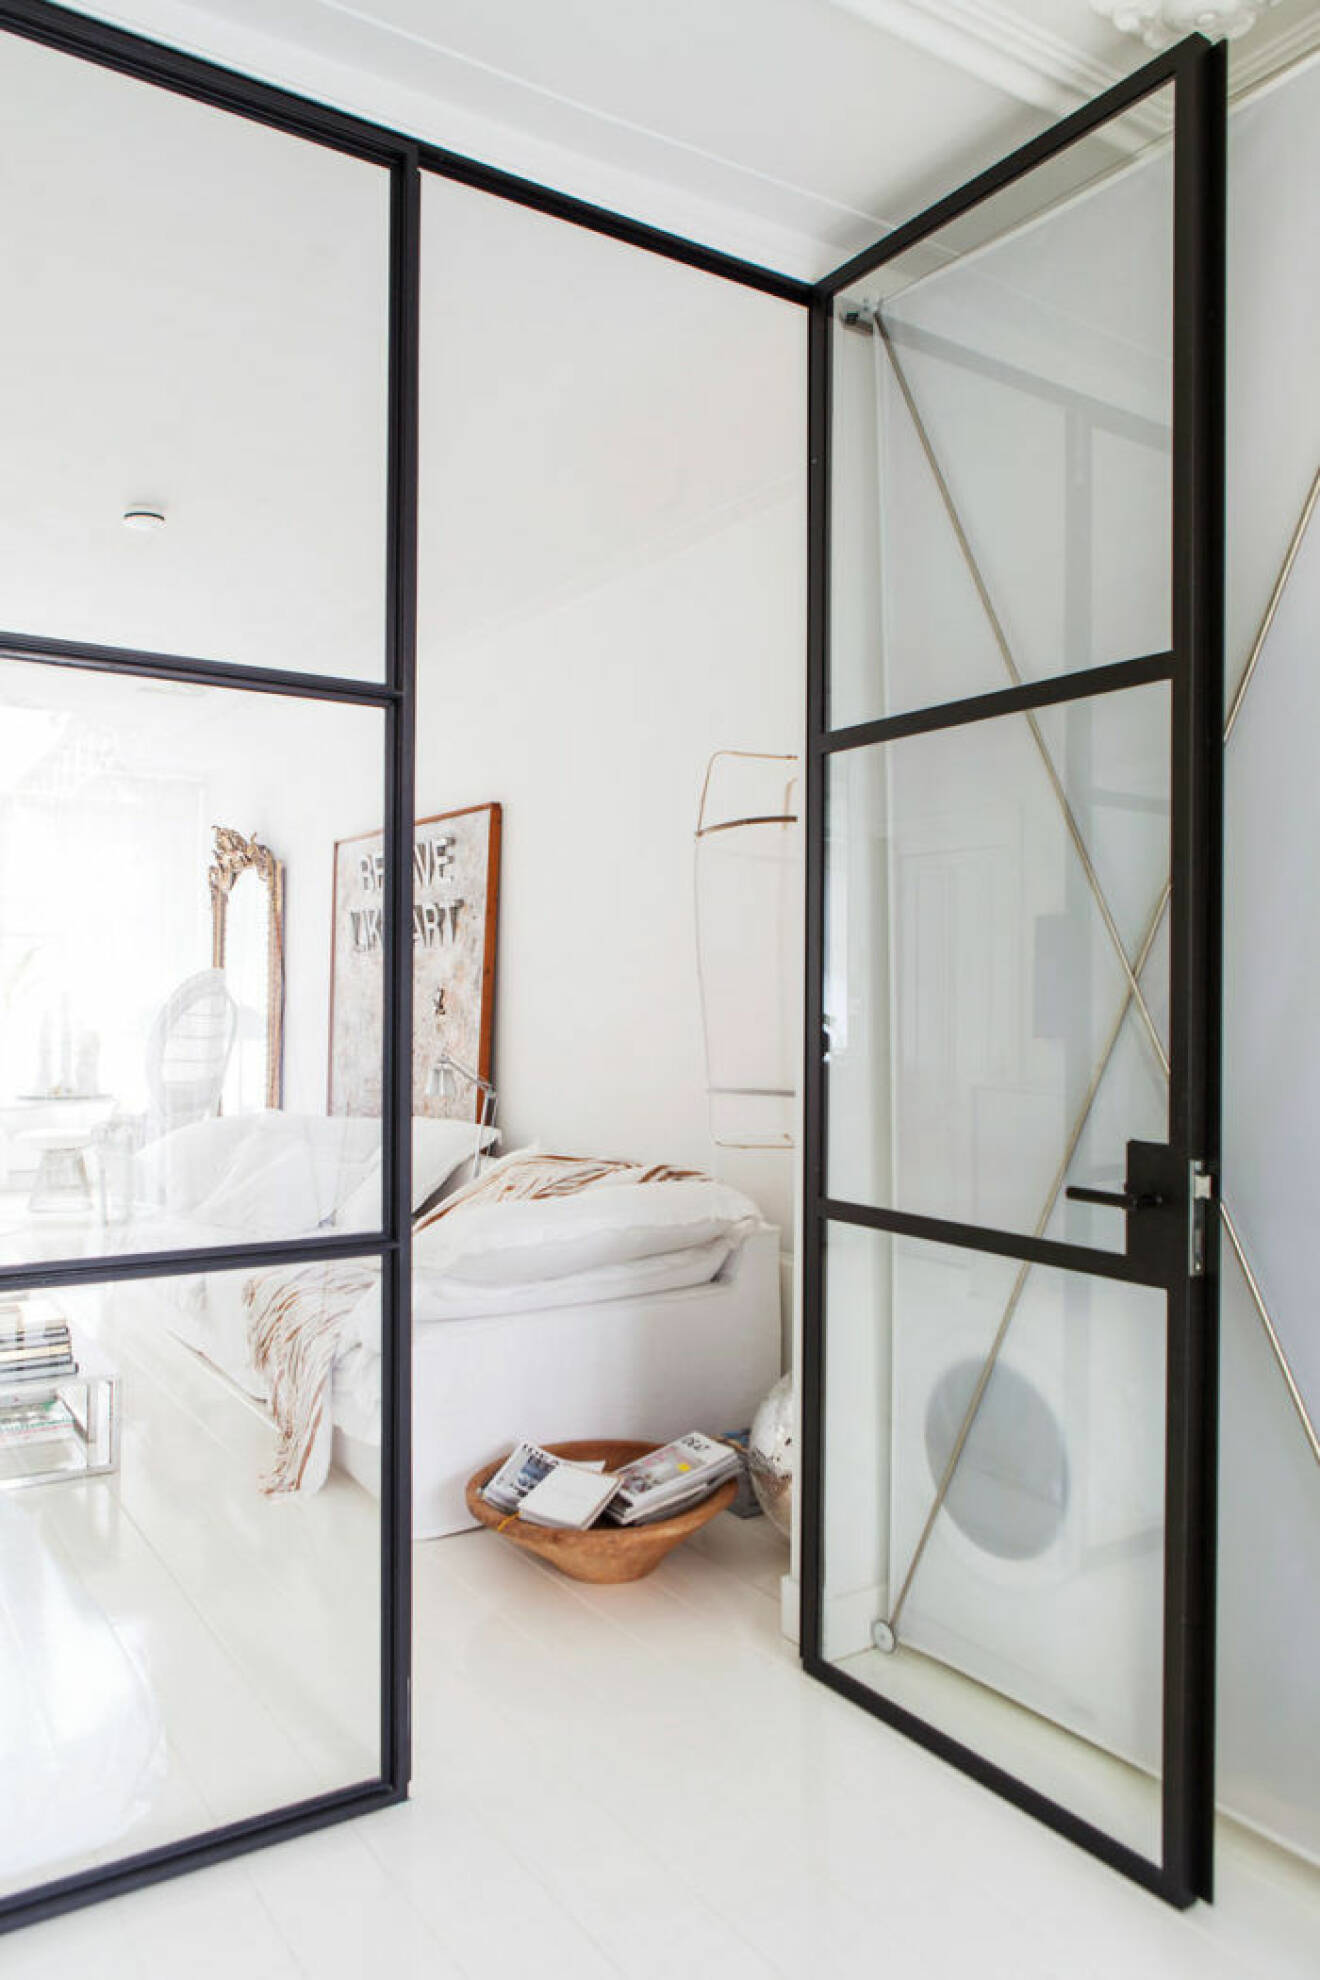 En glasvägg i industristil skärmar av på ett snyggt sätt i compact living-lägenheten.